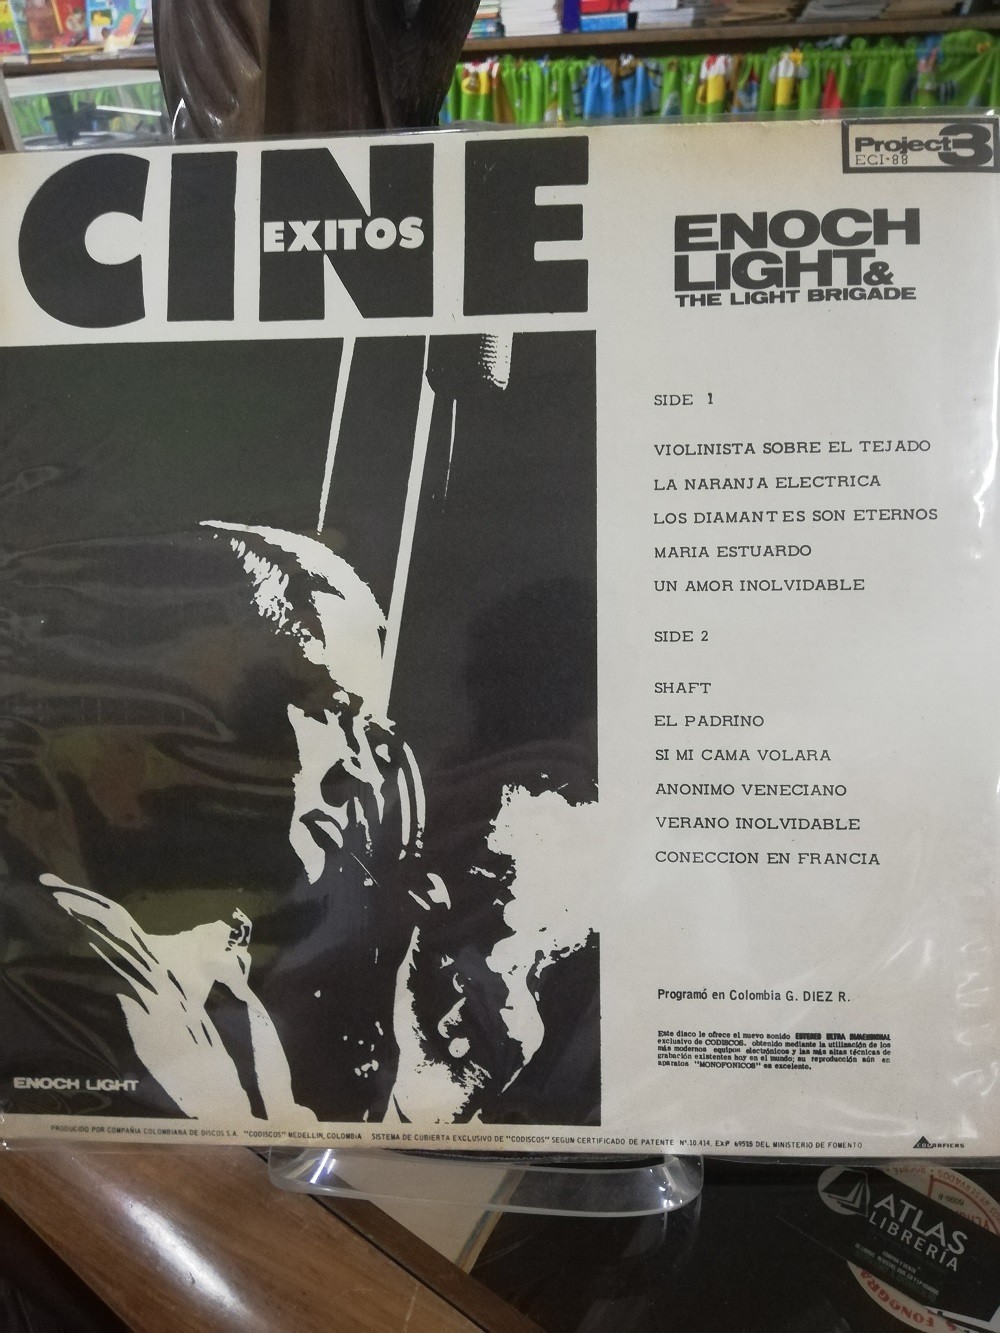 Imagen LP ENOCH LIGHT & THE LIGHT BRIGADE - CINE EXITOS  2